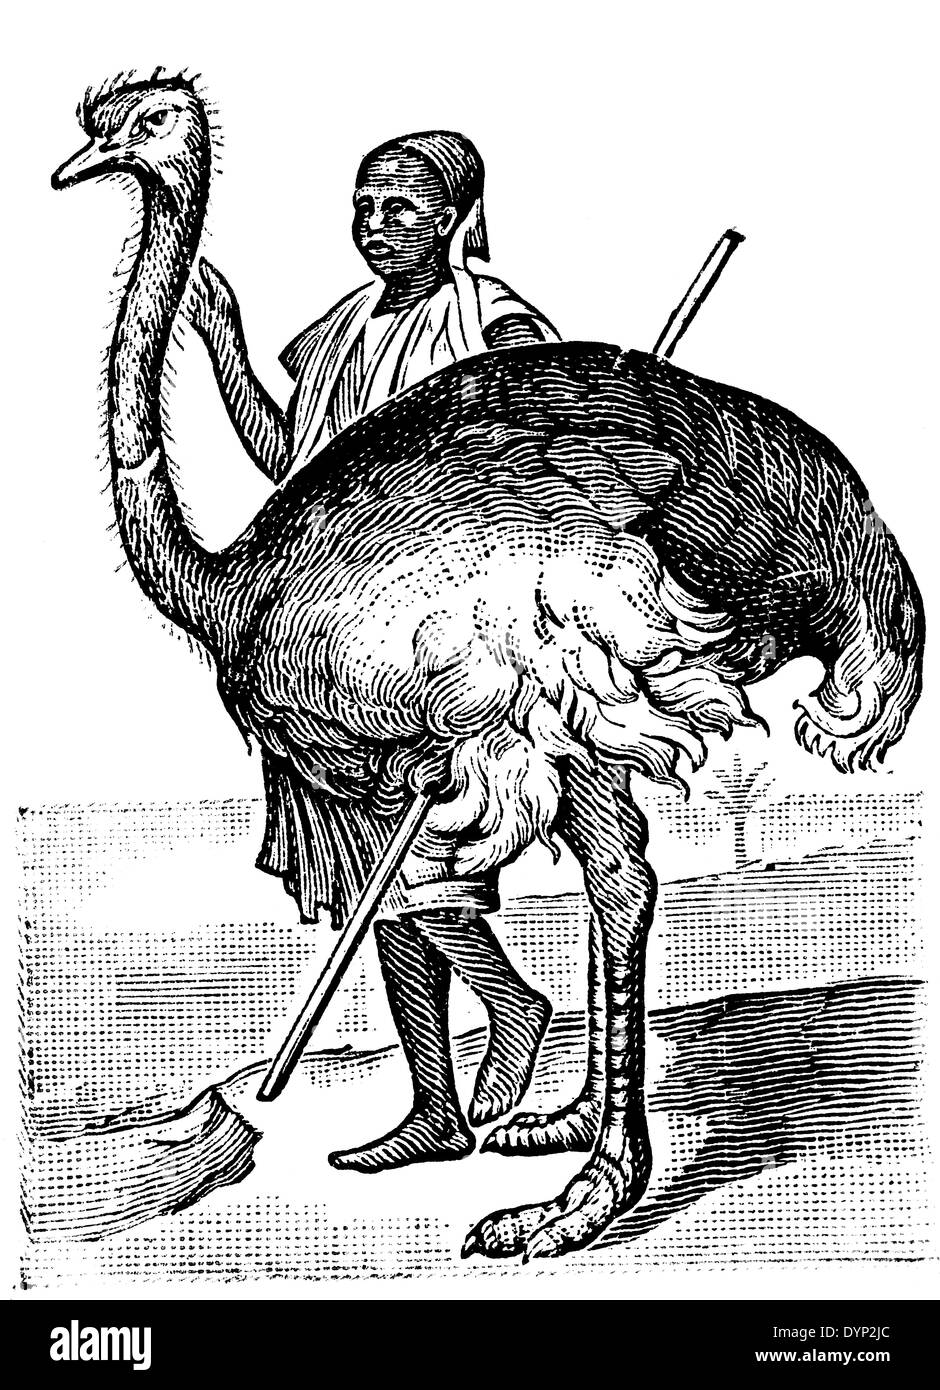 Man riding ostrich, illustration de l'Encyclopédie Soviétique, 1926 Banque D'Images